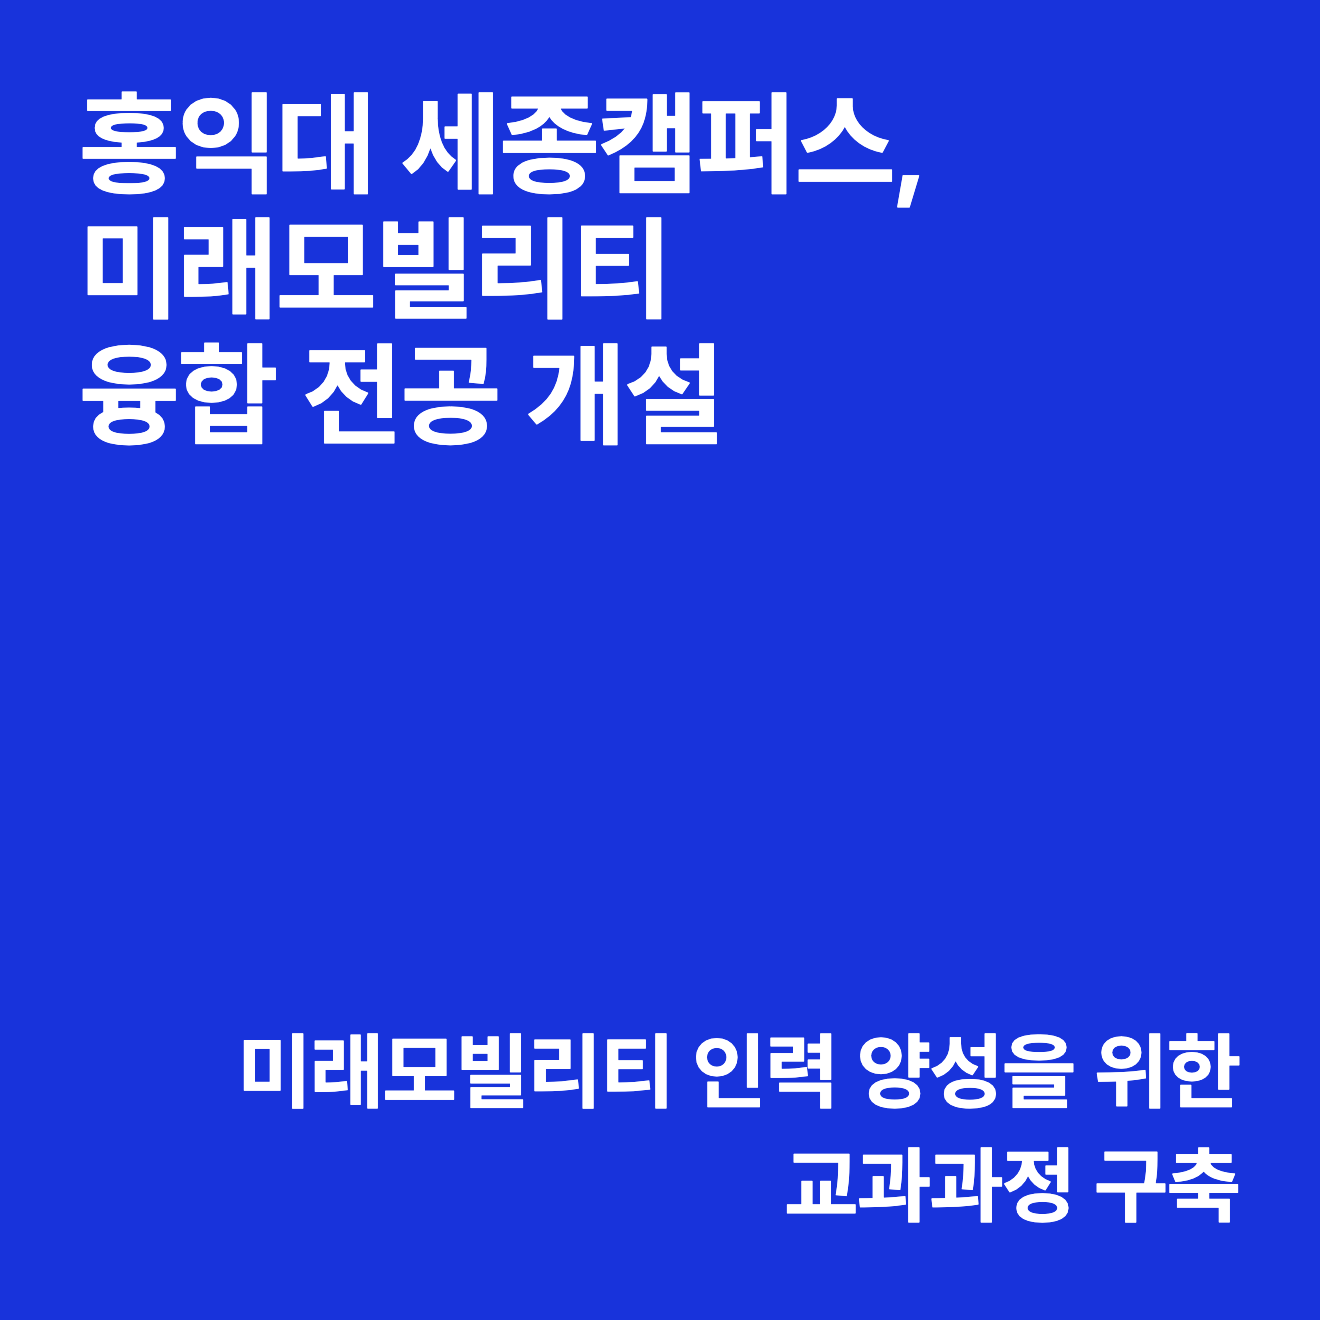 홍익대학교 세종캠퍼스, 미래모빌리티 융합 전공 개설